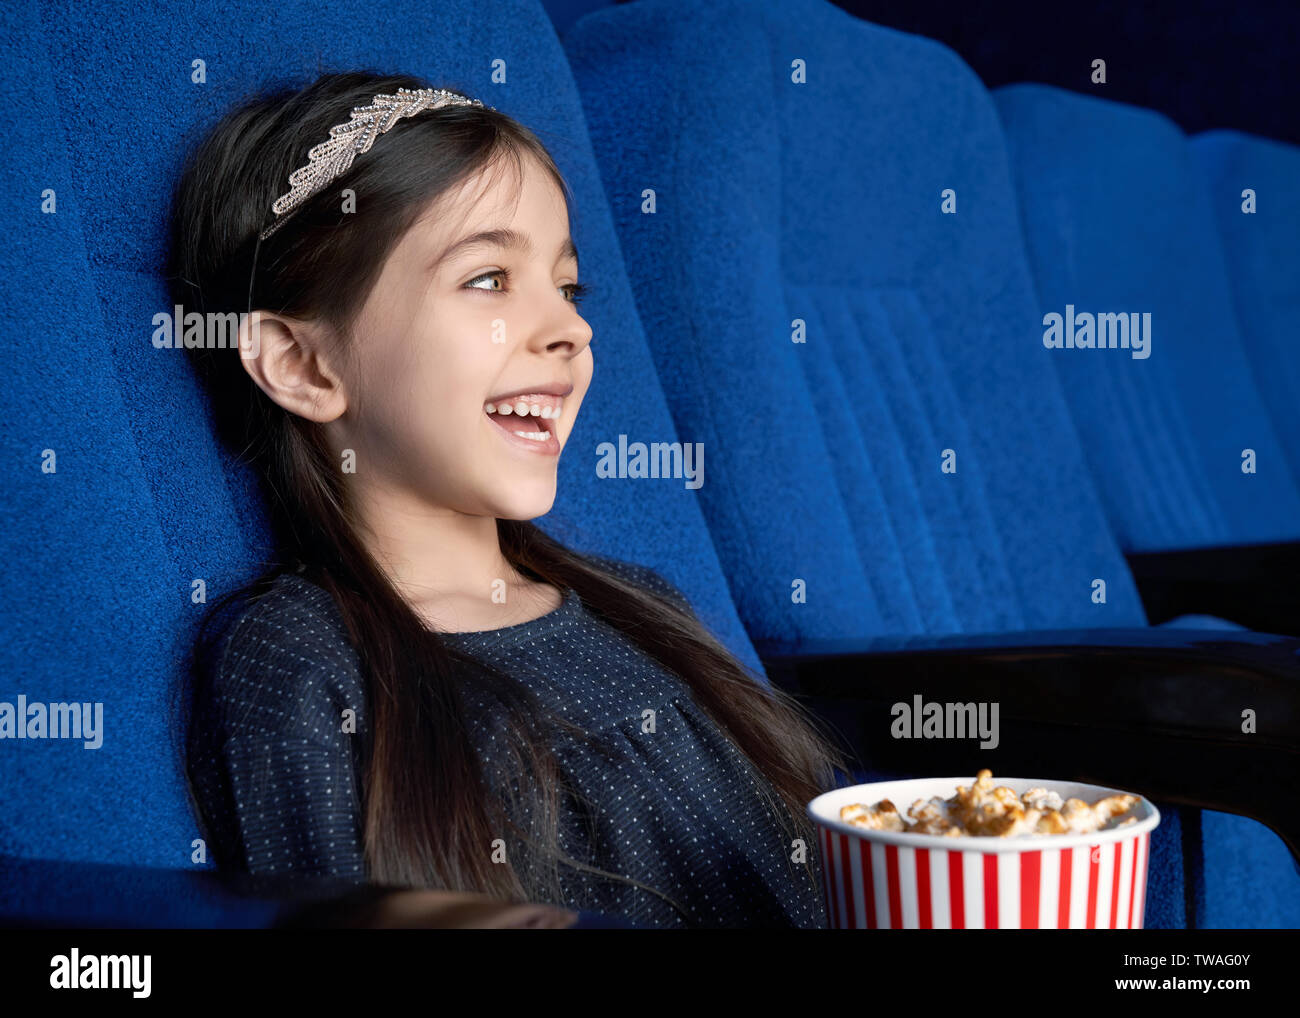 Seitenansicht der kleine Dunkelhaarige sitzen auf Blau Sitz im Kino, Komik und Lachen. Fröhliches schönes Mädchen Popcorn essen und genießen lustiger Film im Kino. Konzept der Unterhaltung. Stockfoto